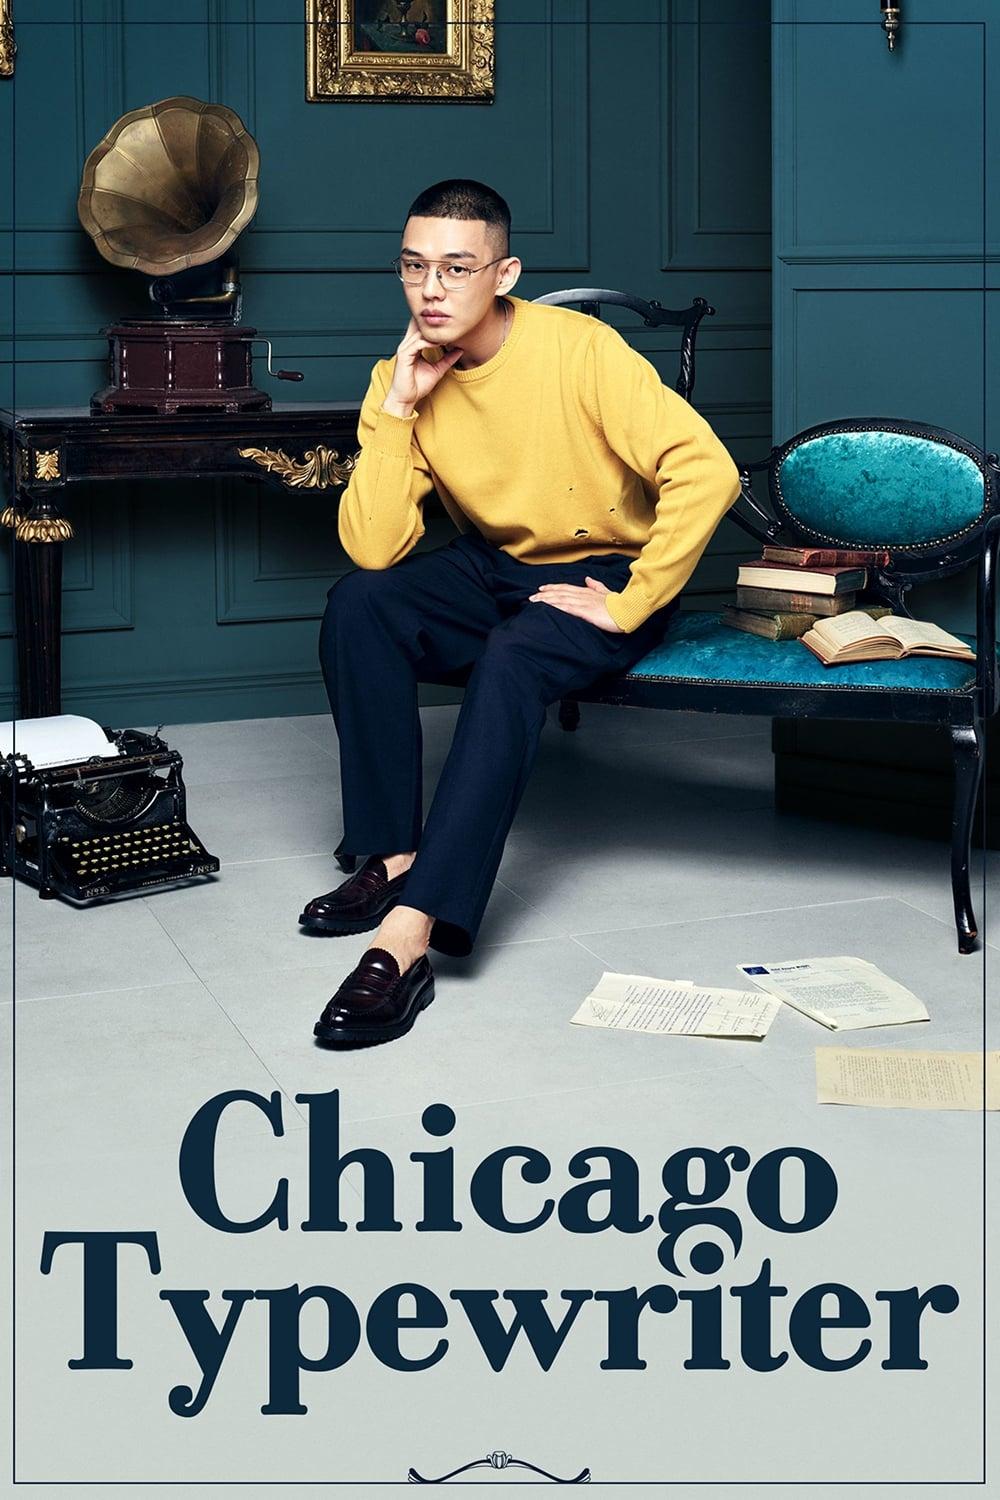 Chicago Typewriter poster